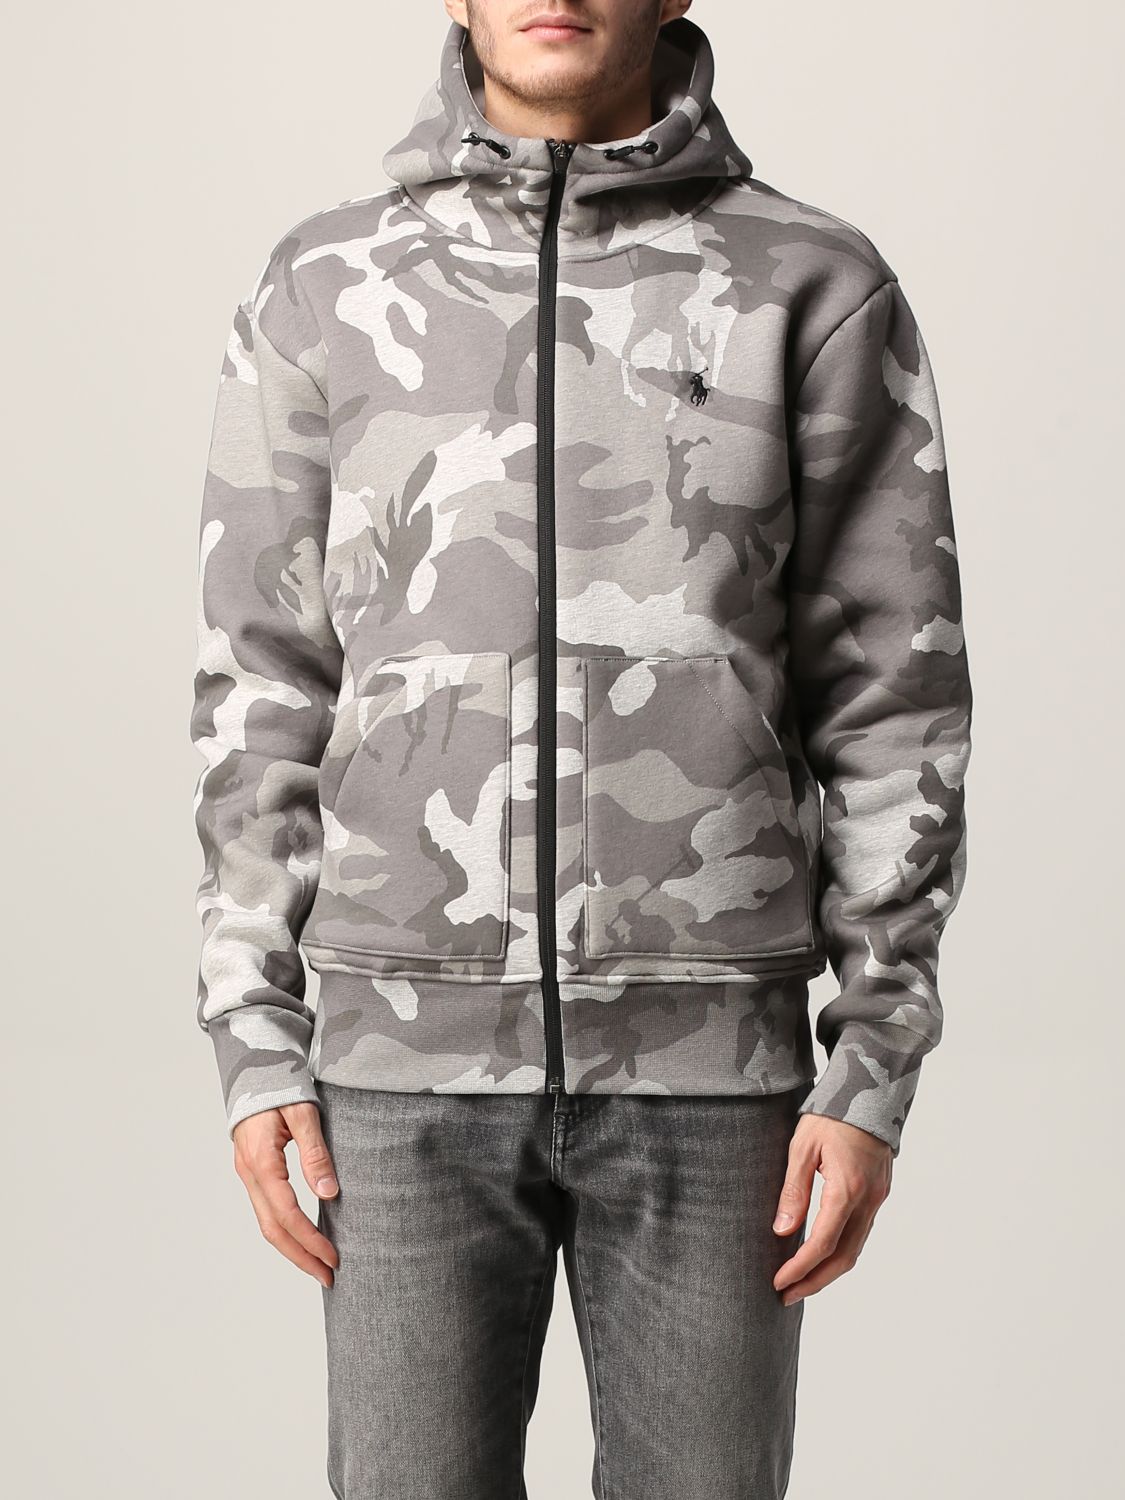 Vormen Compliment rammelaar POLO RALPH LAUREN: camouflage sweatshirt - Grey | Polo Ralph Lauren jacket  710852509 online on GIGLIO.COM